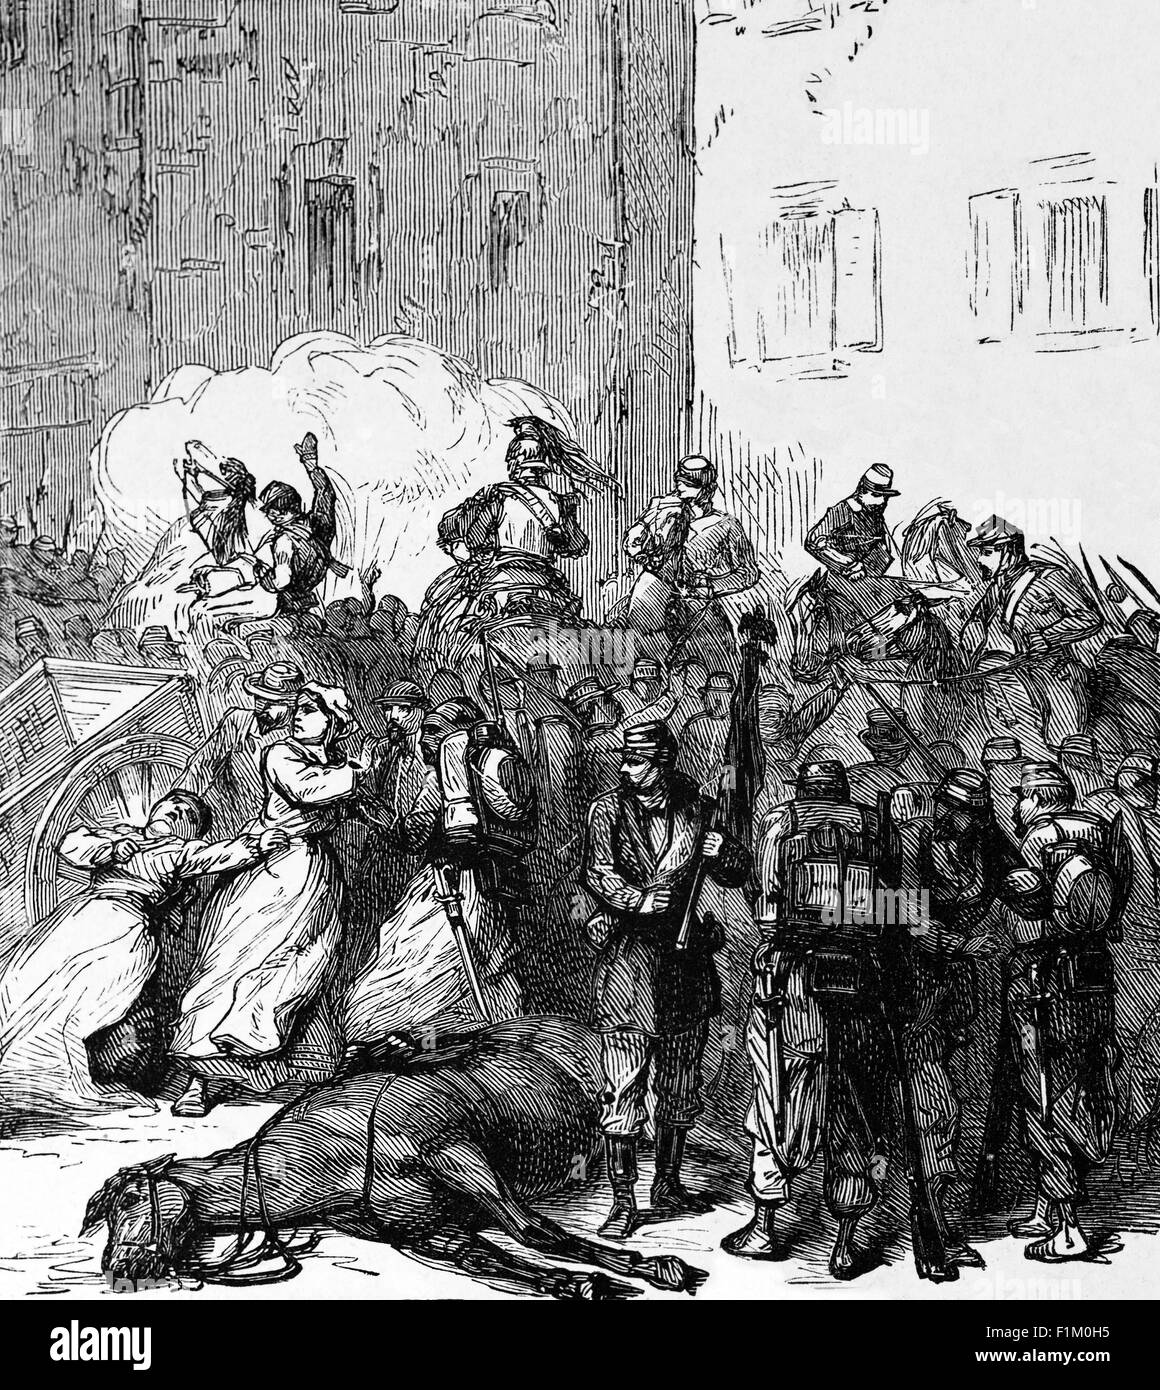 Victimes de la guerre, une rue de Strasbourg bombardée pendant la guerre franco-prussienne de 1870-1871. Un conflit principalement causé par la détermination de la France à rétablir sa position dominante en Europe continentale, qu'elle avait perdue après la victoire écrasante de la Prusse sur l'Autriche en 1866. Banque D'Images